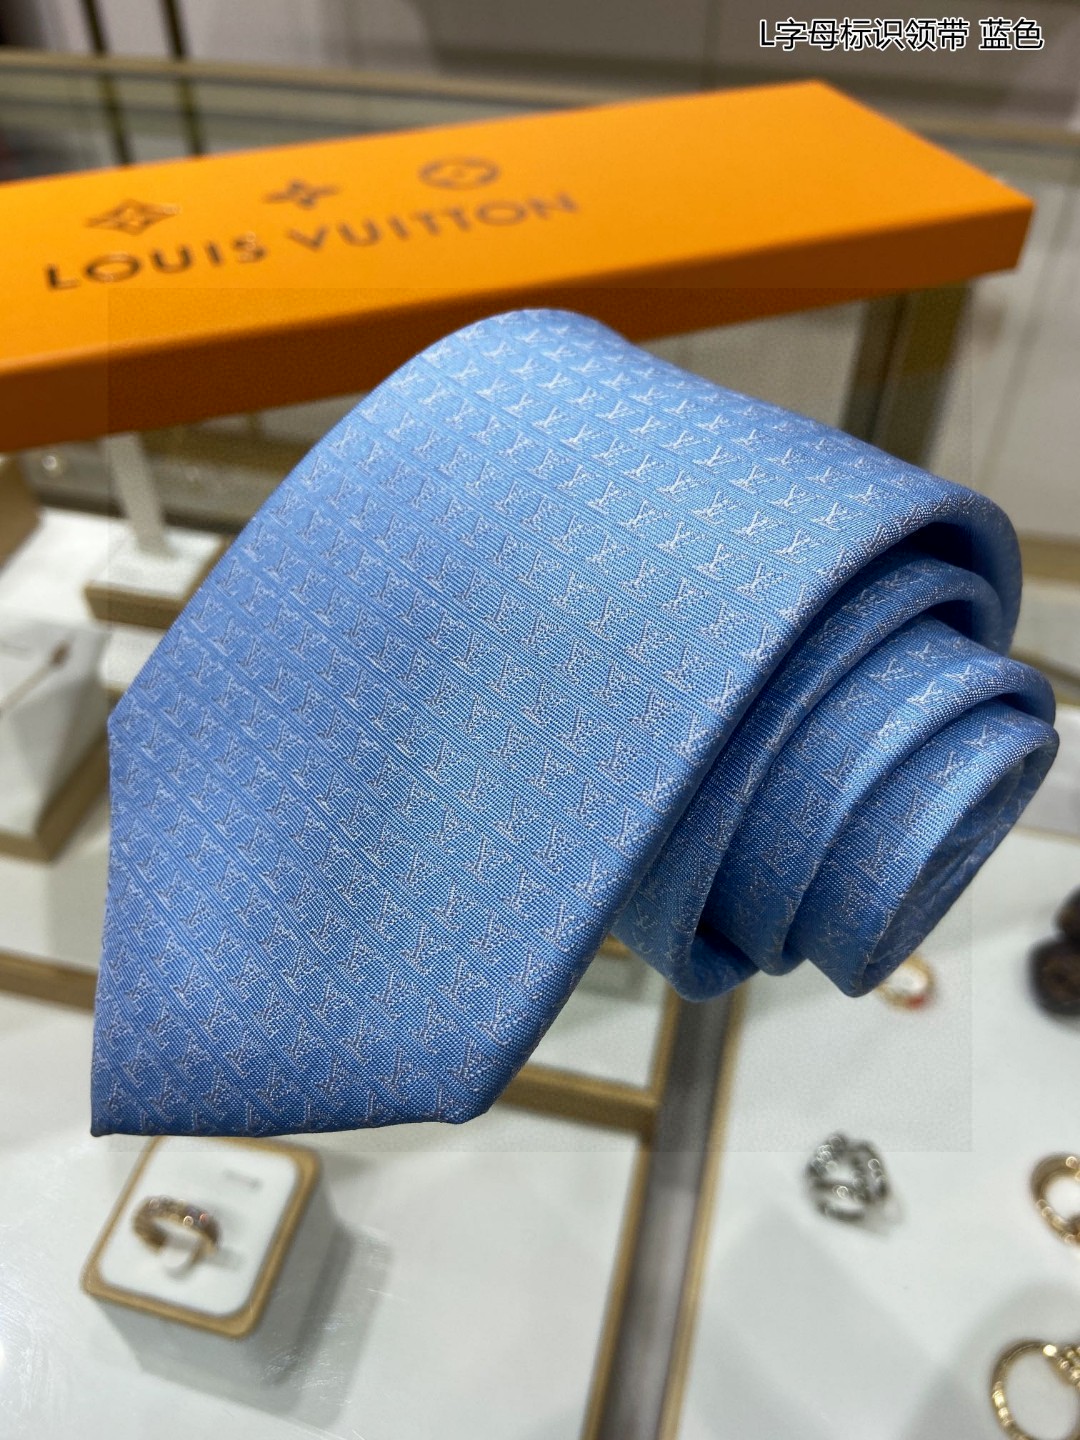 特价男士领带系列L字母标识领带稀有展现精湛手工与时尚优雅的理想选择此款真丝织就的DiamondsV领带以